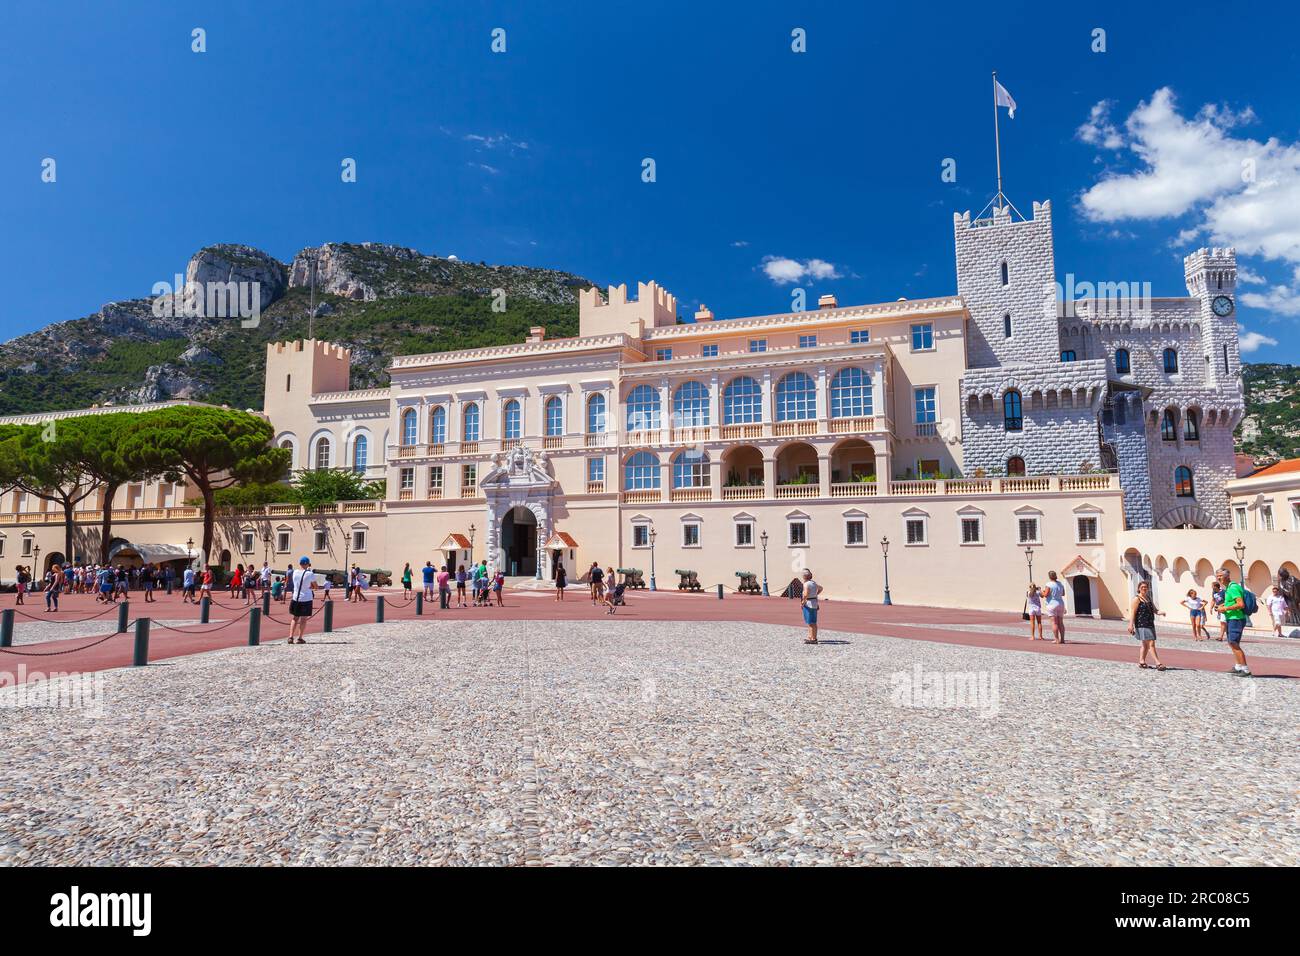 Monte Carlo, Monaco - 15 août 2018 : le Palais Prince de Monaco à Monaco-ville, les touristes marchent dans la rue Banque D'Images